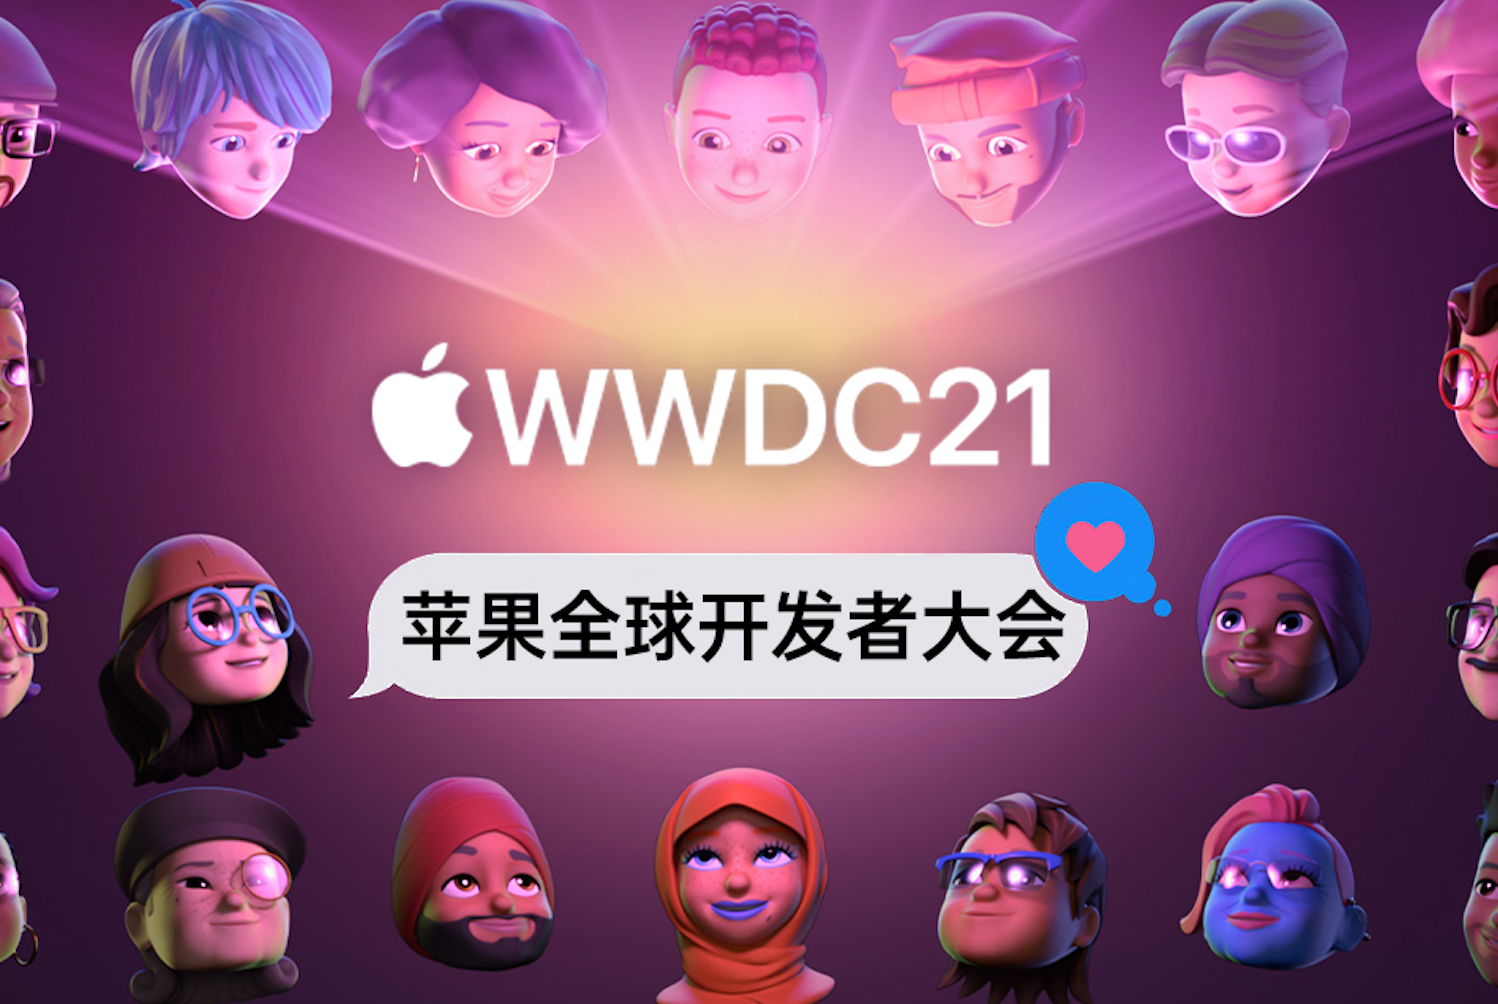 聊聊苹果WWDC2021吧